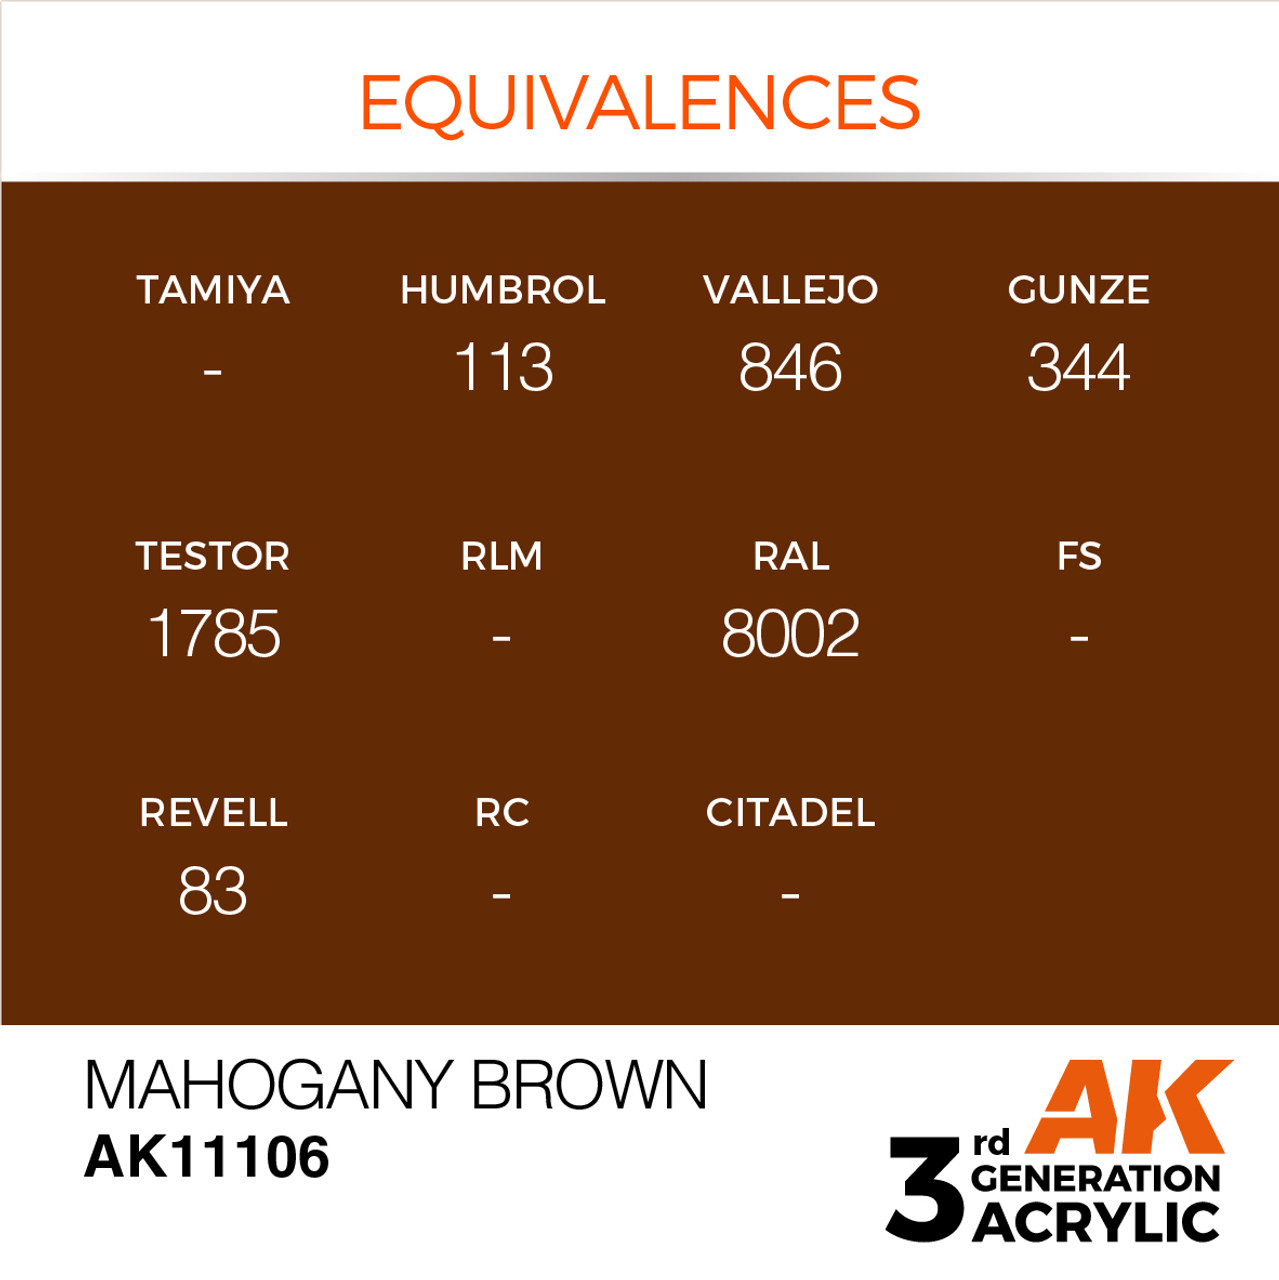 AK Interactive 3G Acrylic Mahogany Brown 17ml